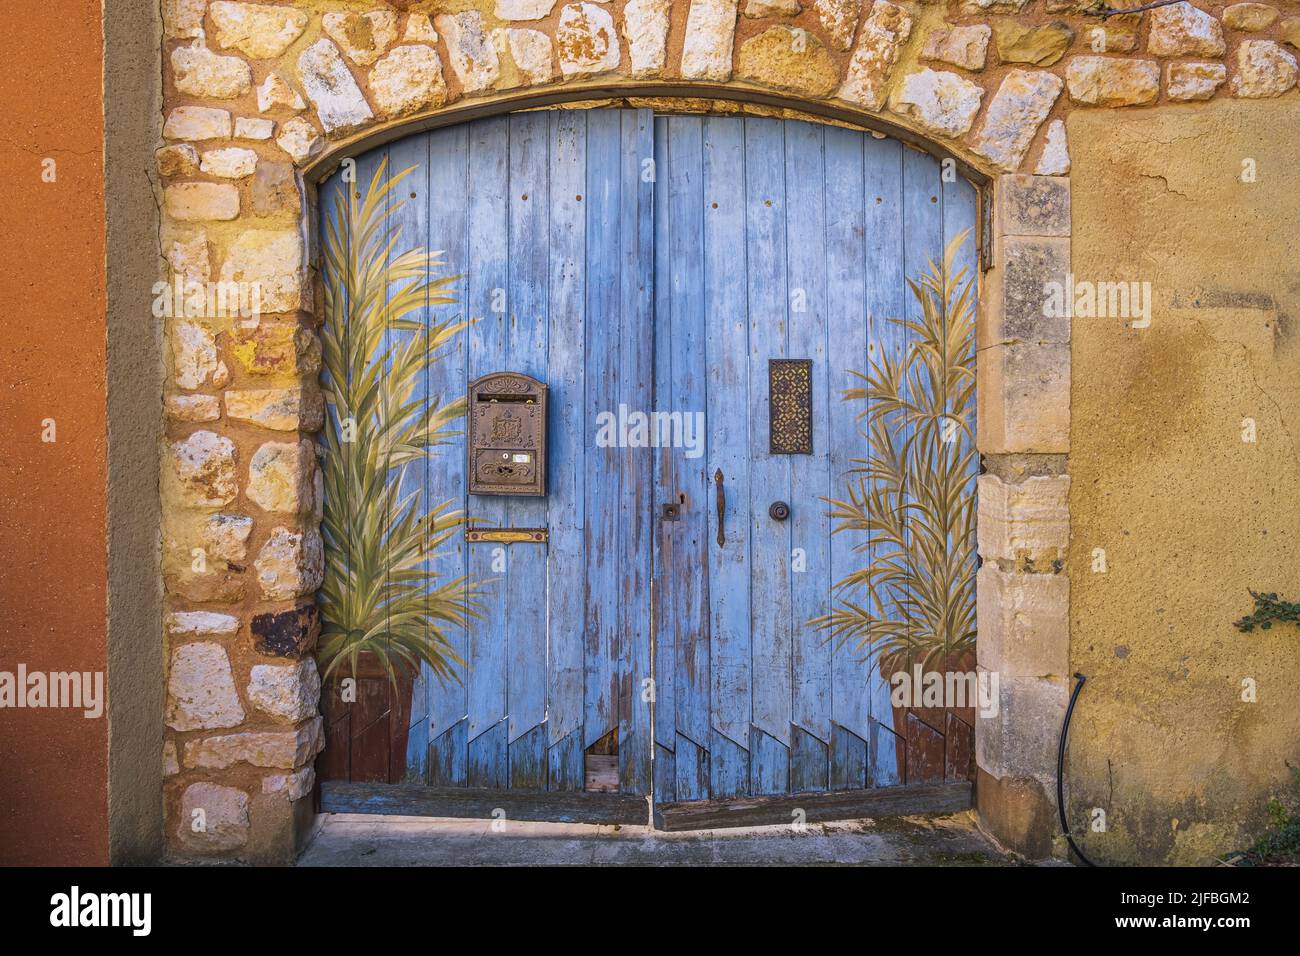 France, Vaucluse, Luberon regional nature park, Roussillon, labelled Les Plus Beaux Villages de France (The Most Beautiful Villages of France), decorated door Stock Photo